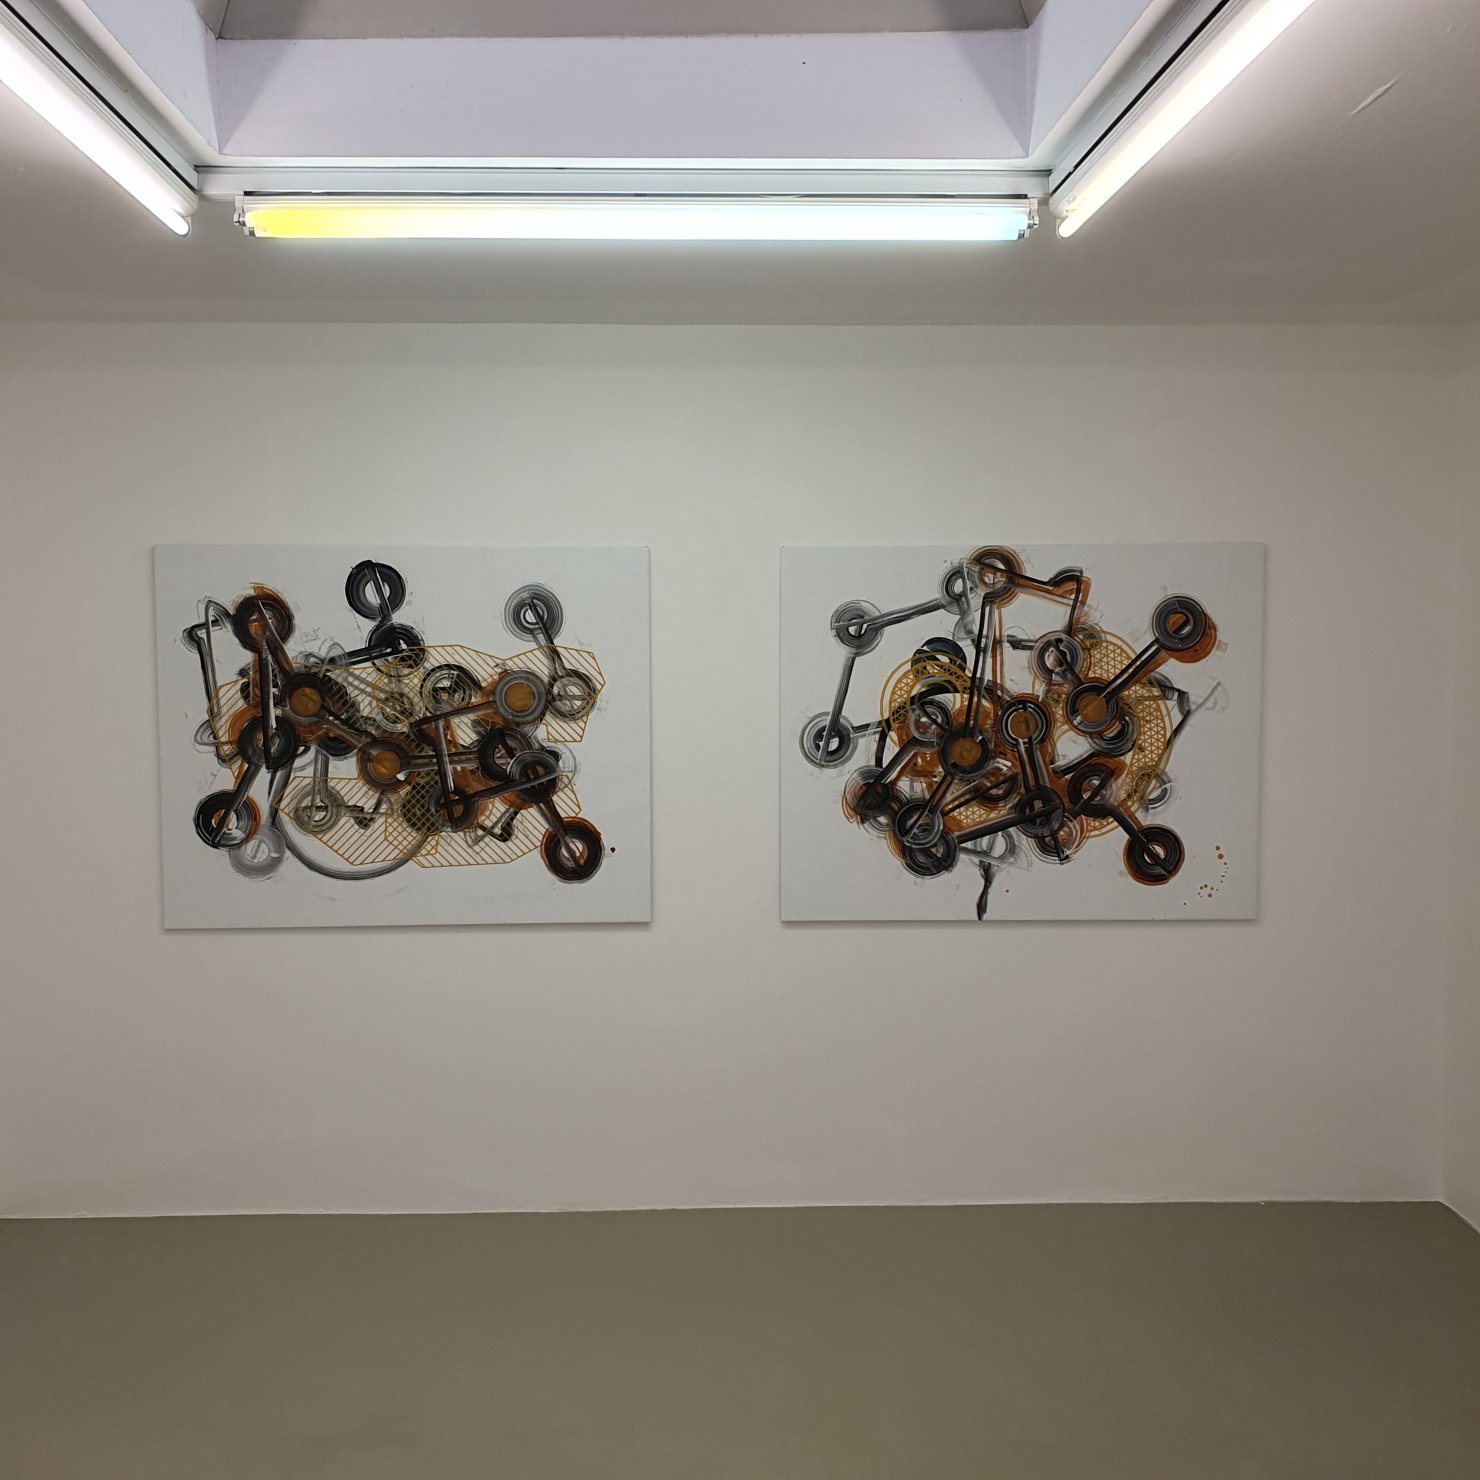 Installation image for Niki Passath: Assemblisms, at Lukas Feichtner Galerie